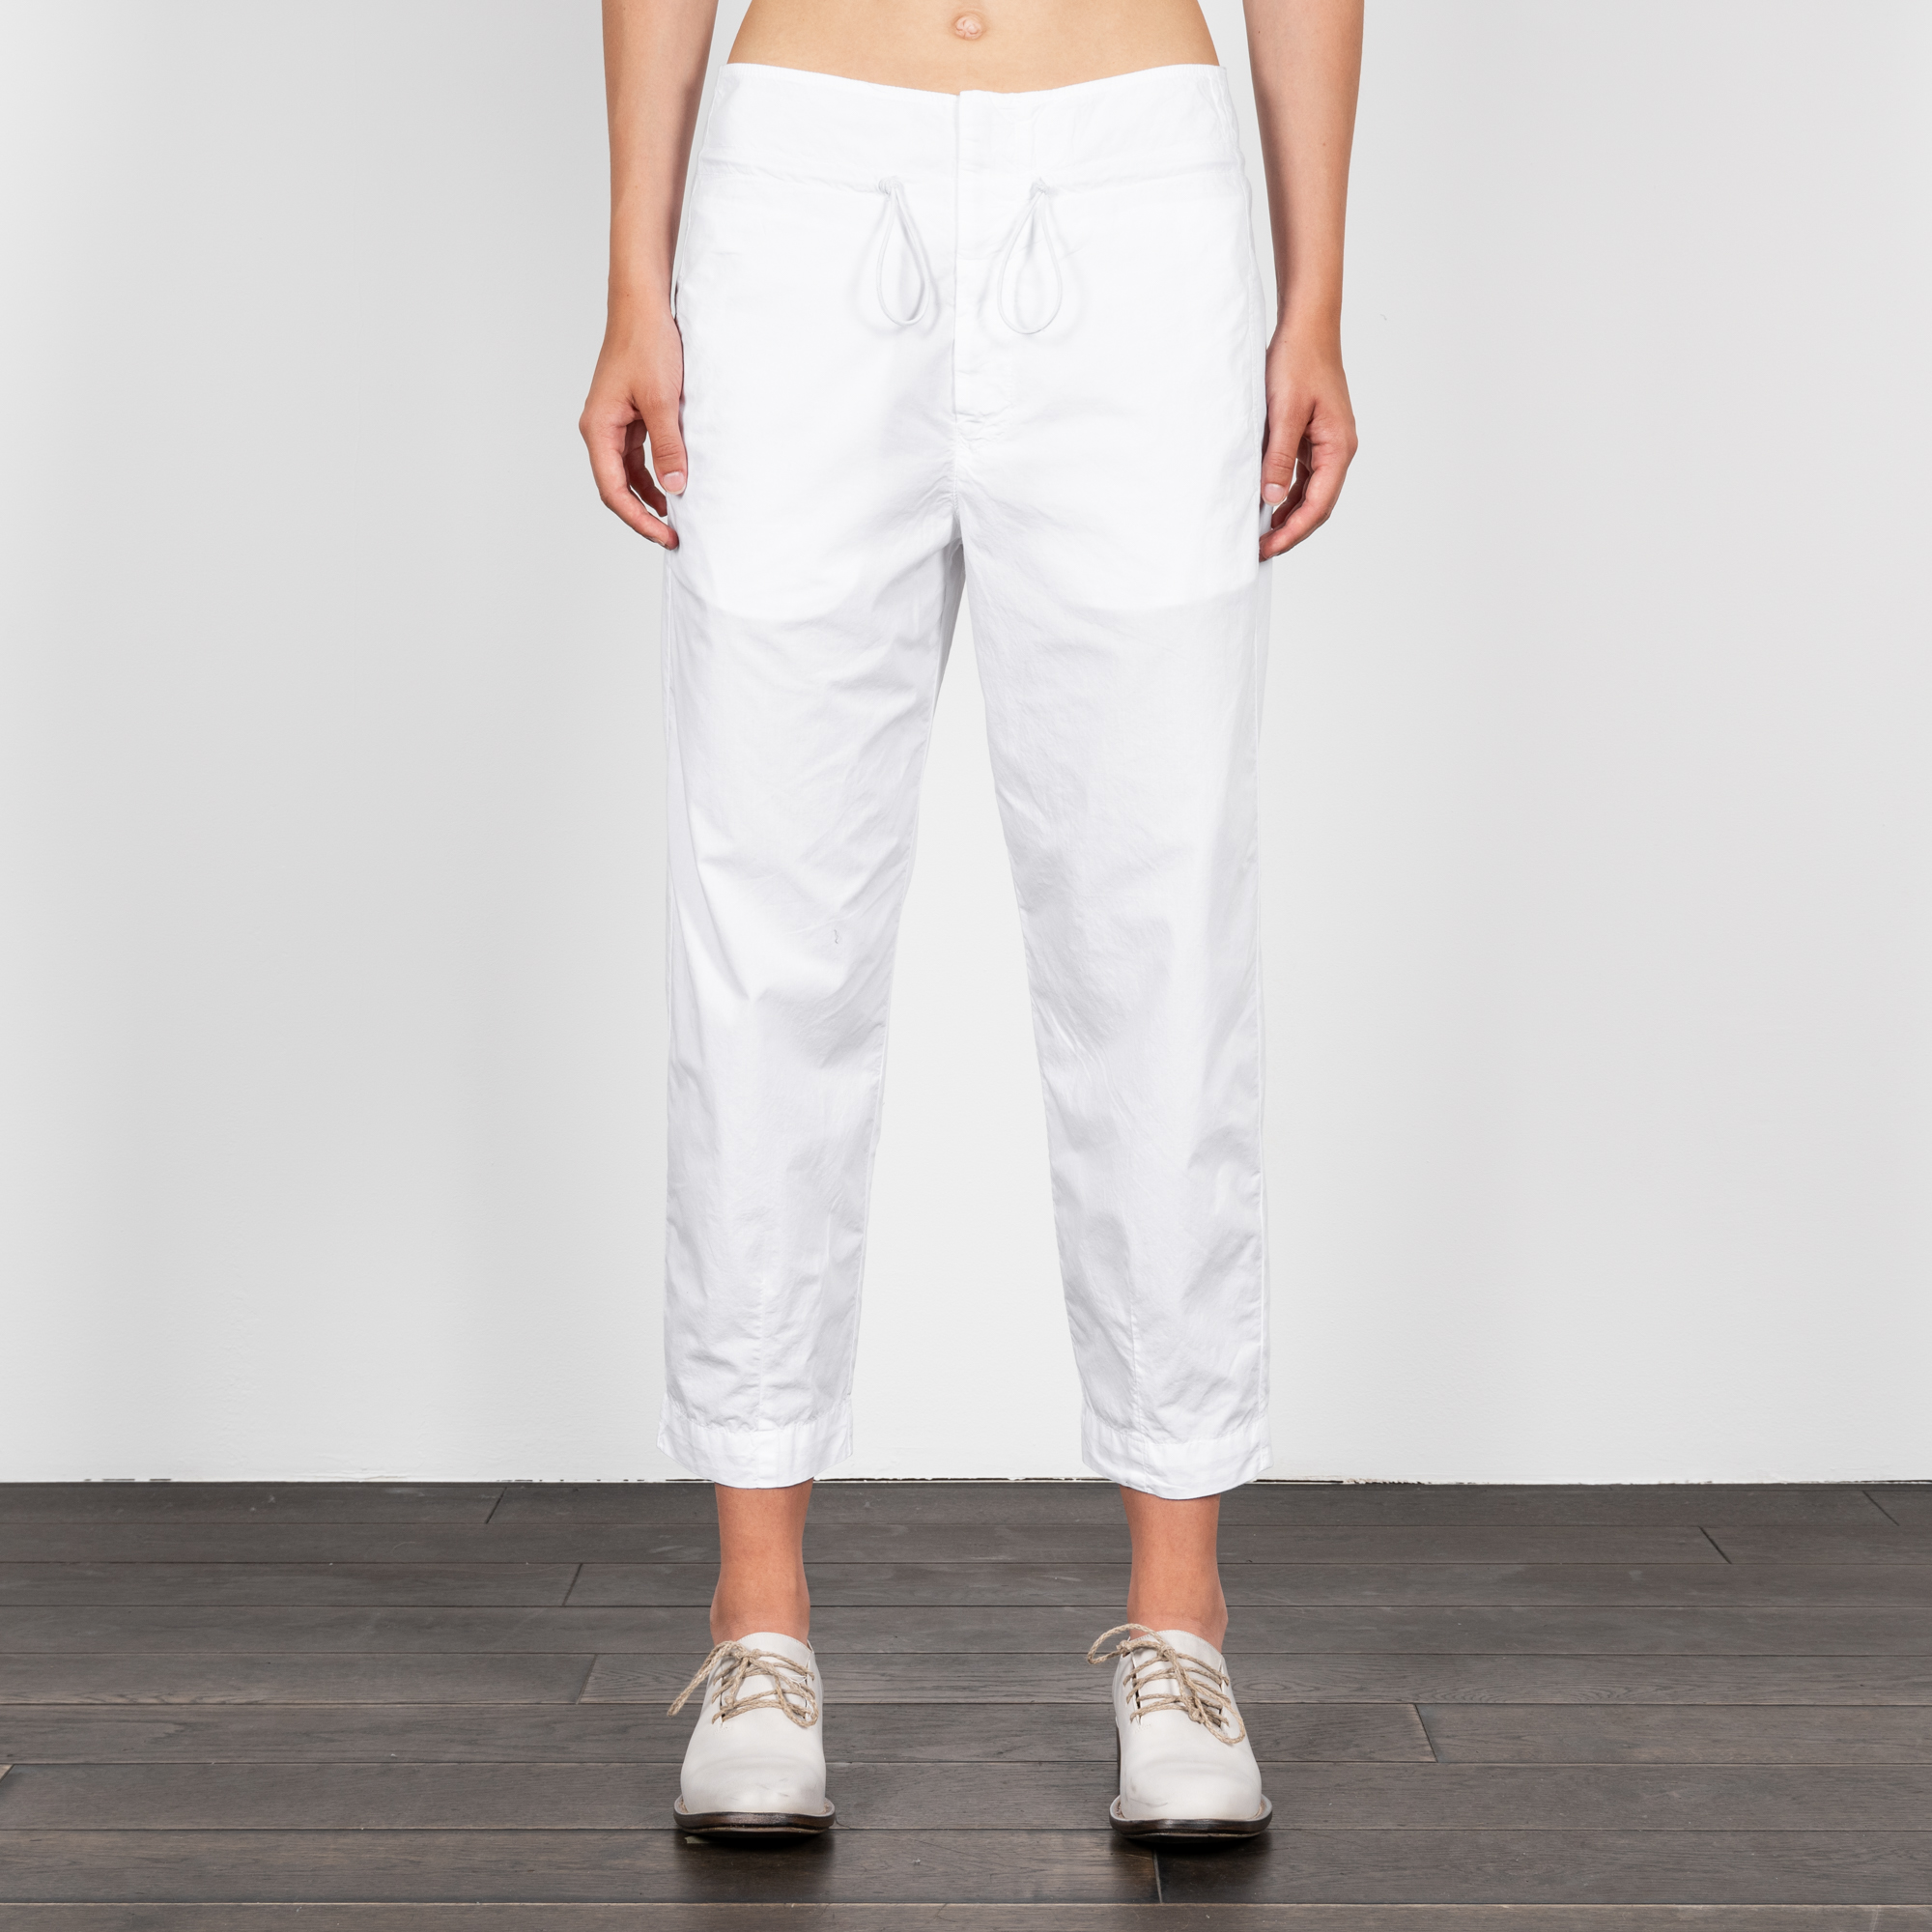 Woman wearing white cotton drawstring pants